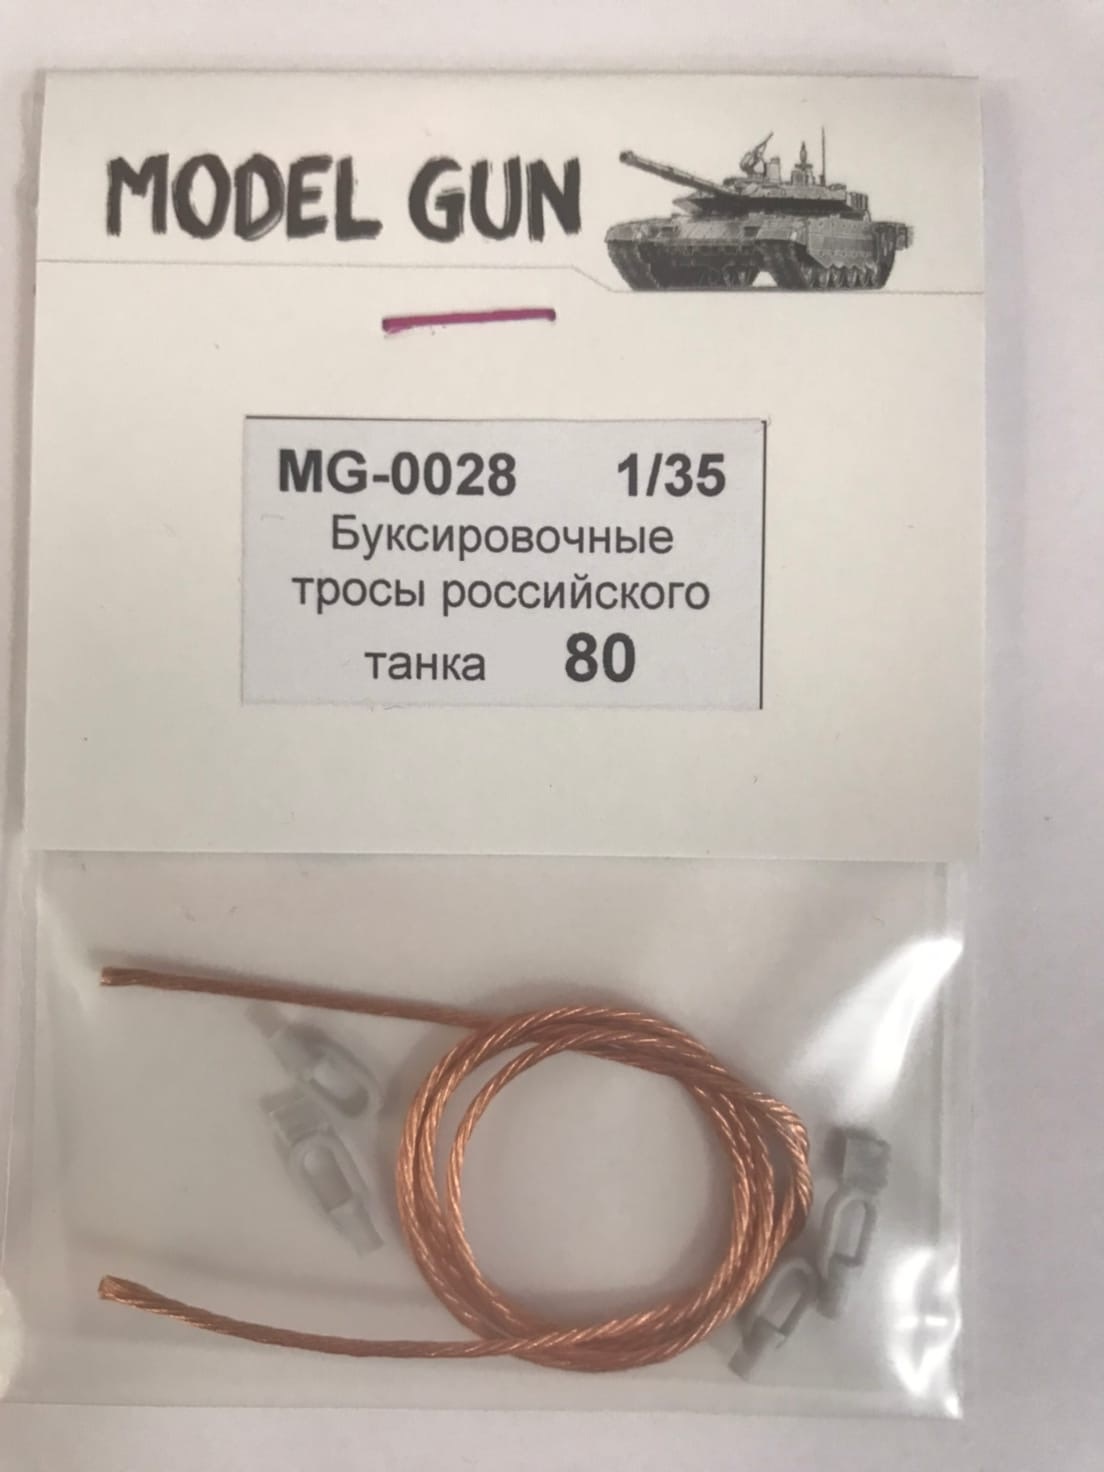 MG-0028  дополнения из металла  Буксировочные тросы российского танка Танк-80  (1:35)